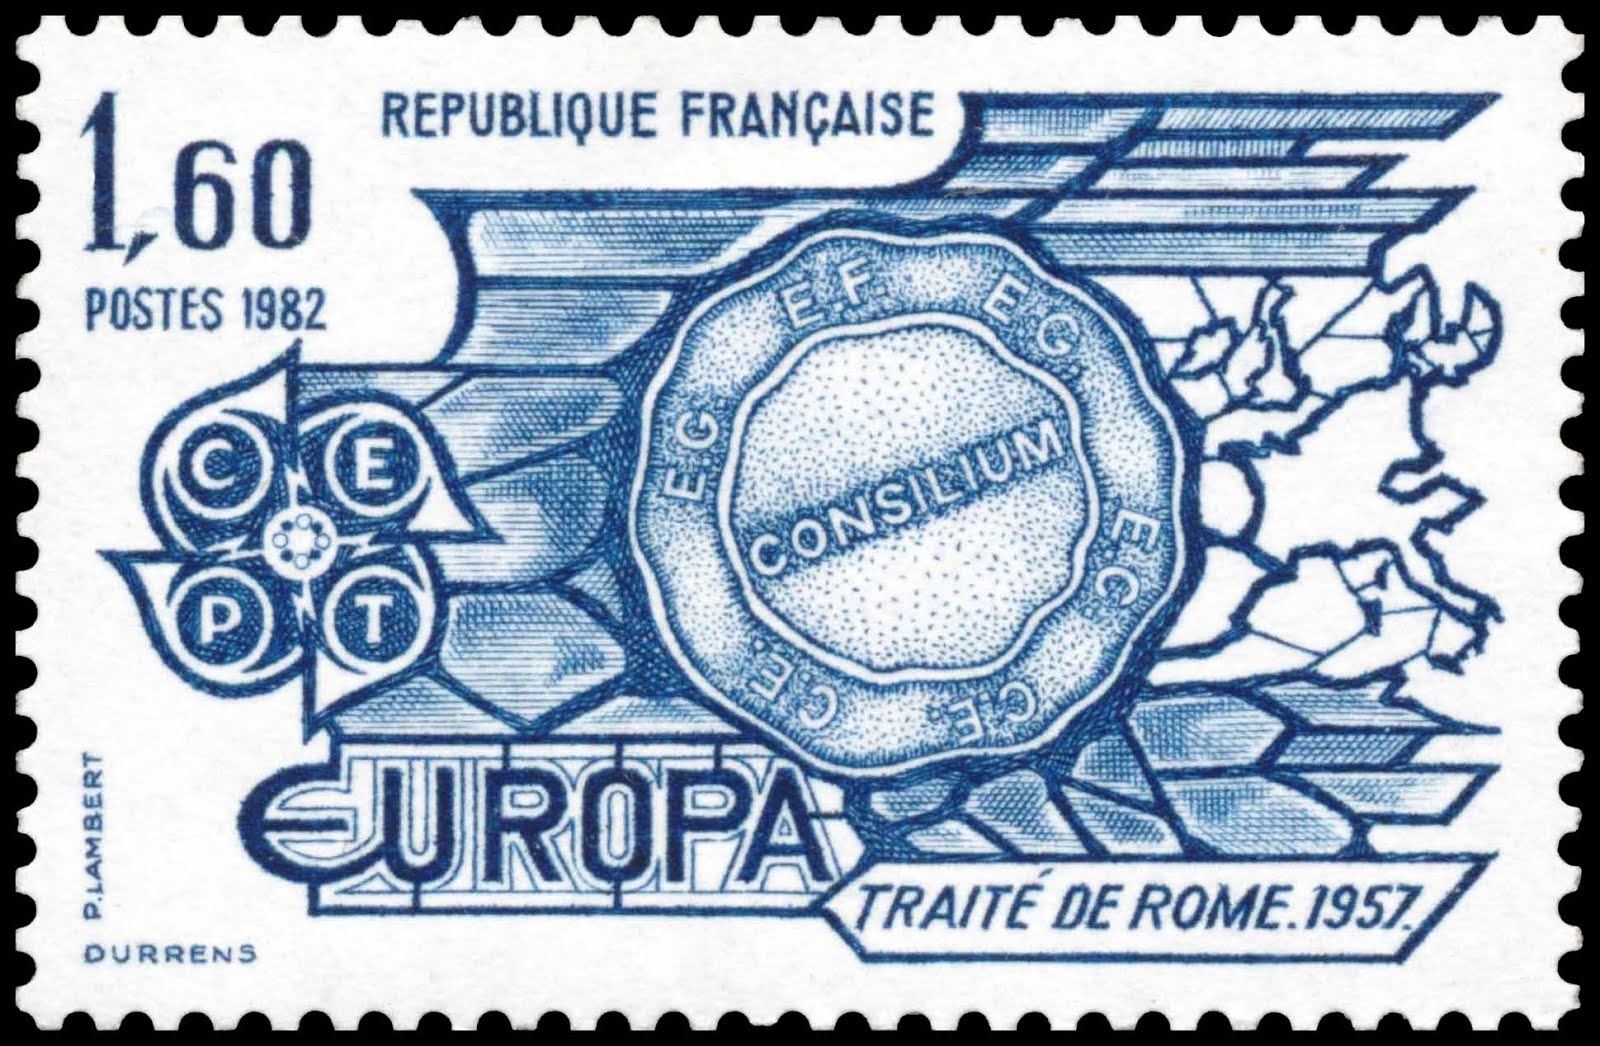 Римский договор 1957. Французская марка 1980. Гербовые марки Франции. Европа штамп. Почтовая марка 1 рубль.